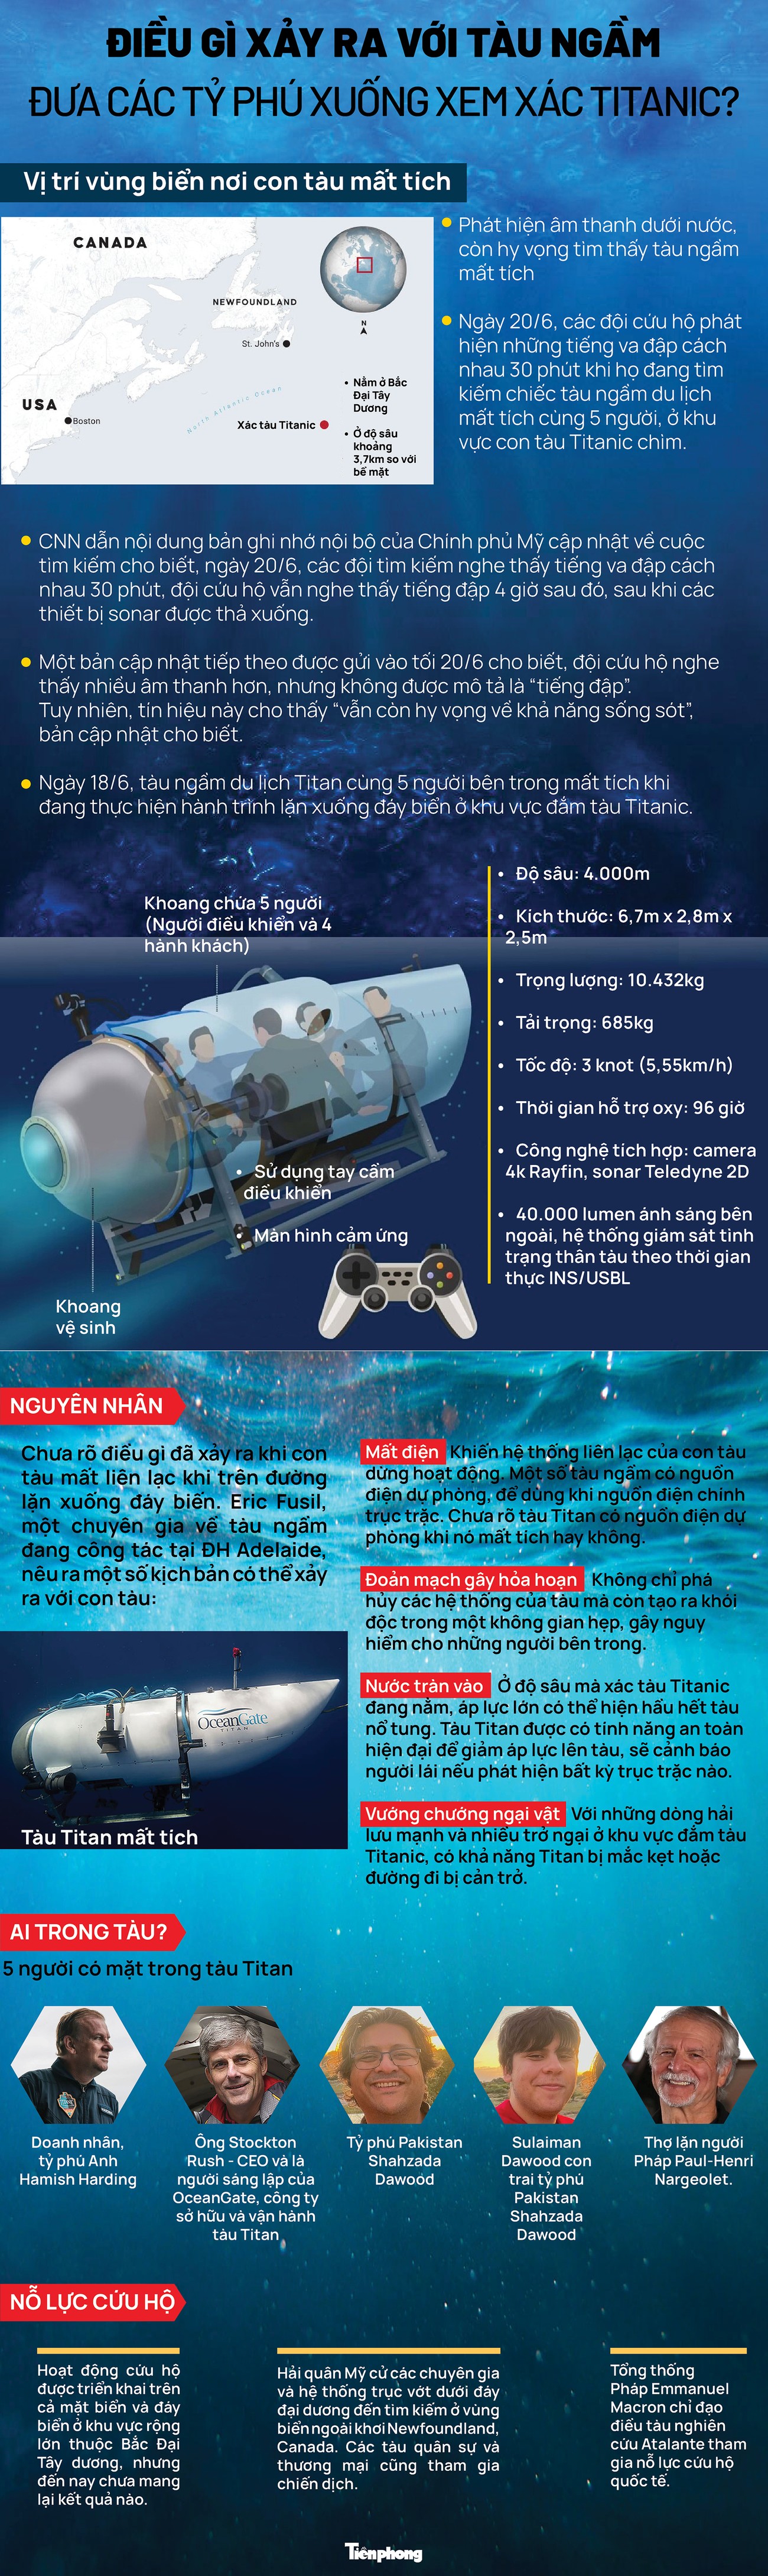 [Infographics] Điều gì xảy ra với tàu ngầm đưa các tỷ phú xuống xem xác Titanic? - Ảnh 1.